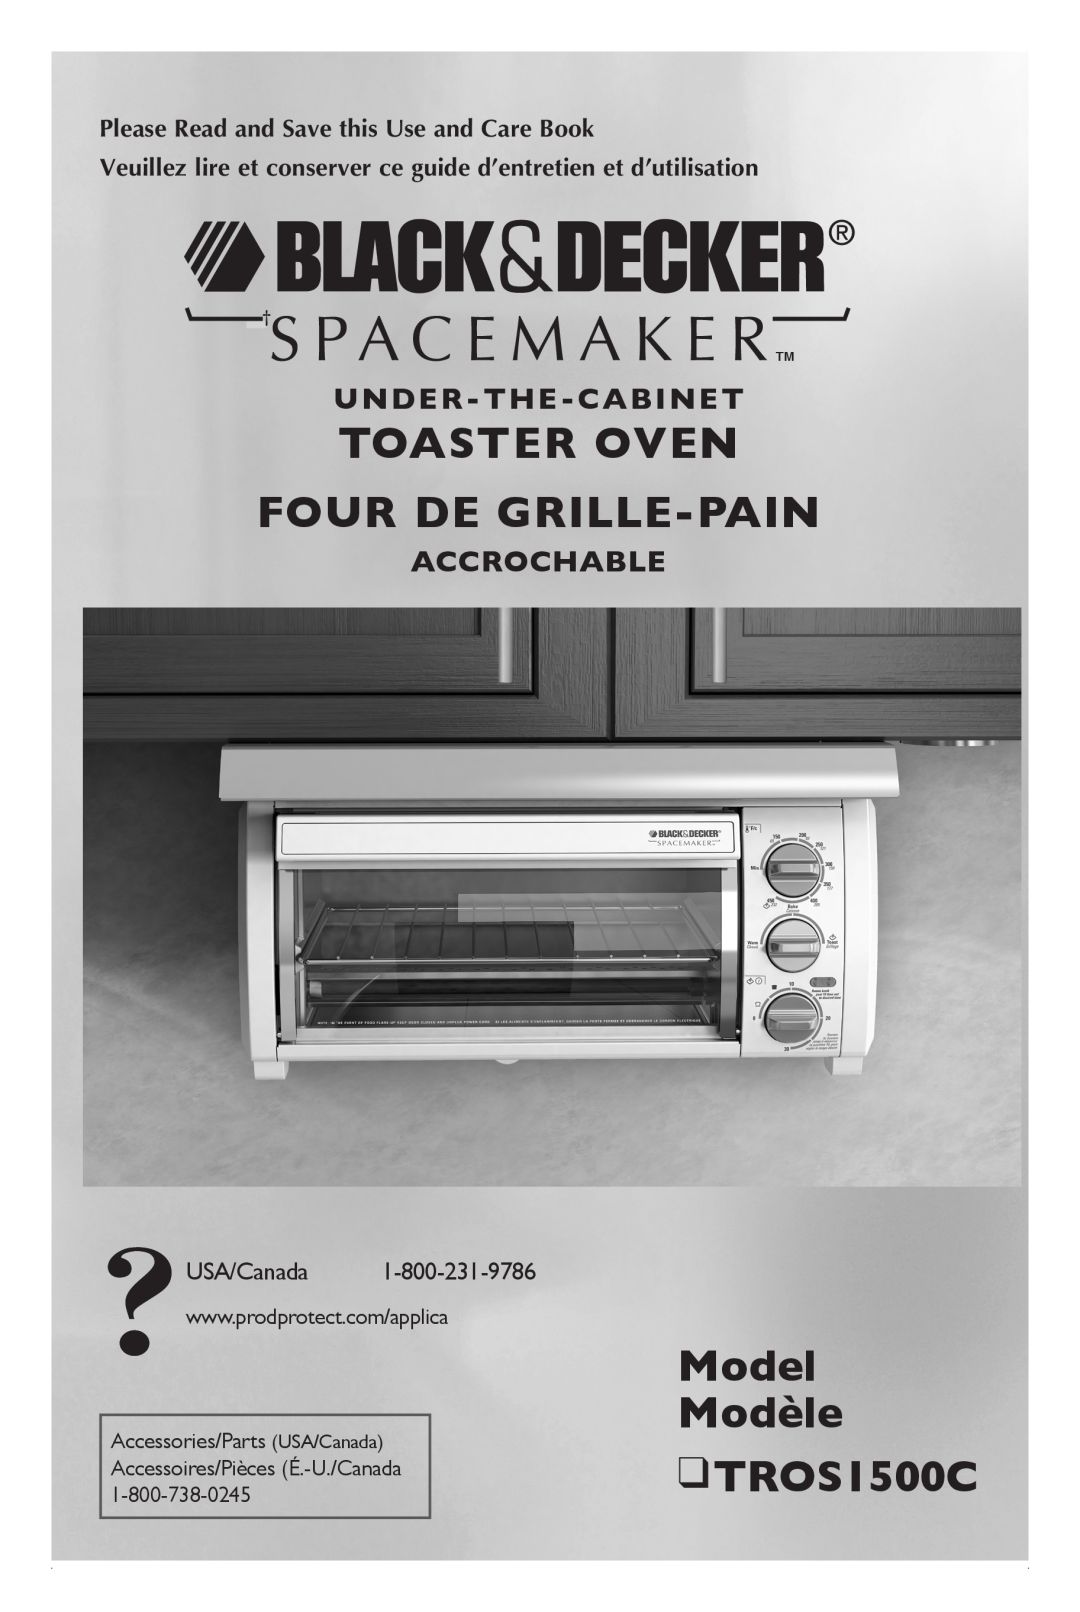 Black & Decker TROSOS1500C manual Toaster Oven Four de grille-pain, Model Modèle TROS1500C, Under-The-Cabinet, Accrochable 